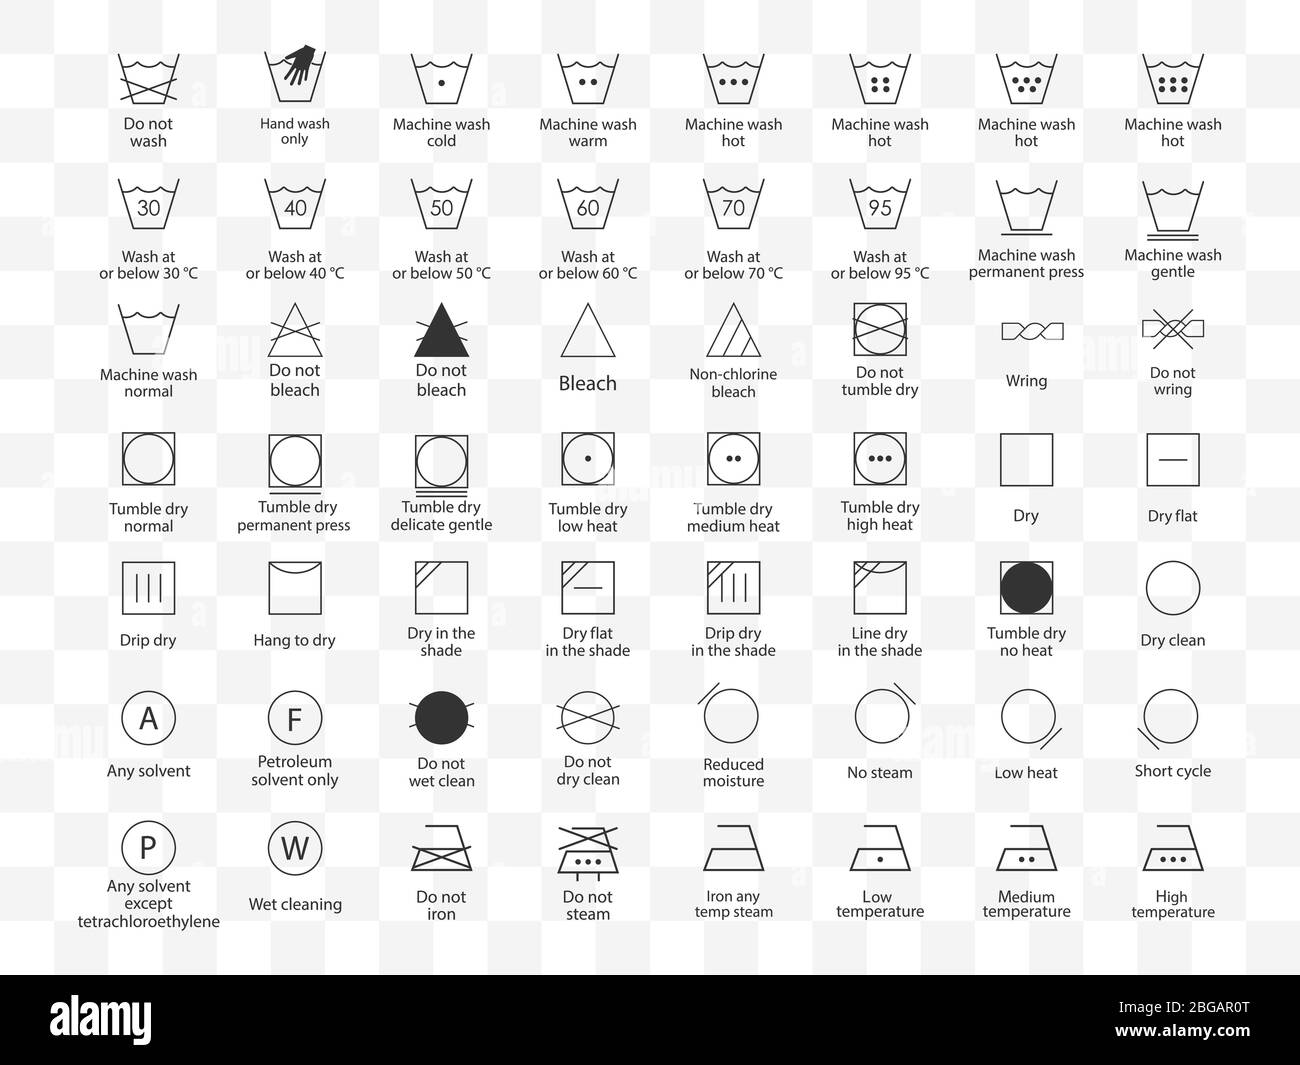 Symbole für die Wäsche. Vektorgrafik, flaches Design. Stock Vektor